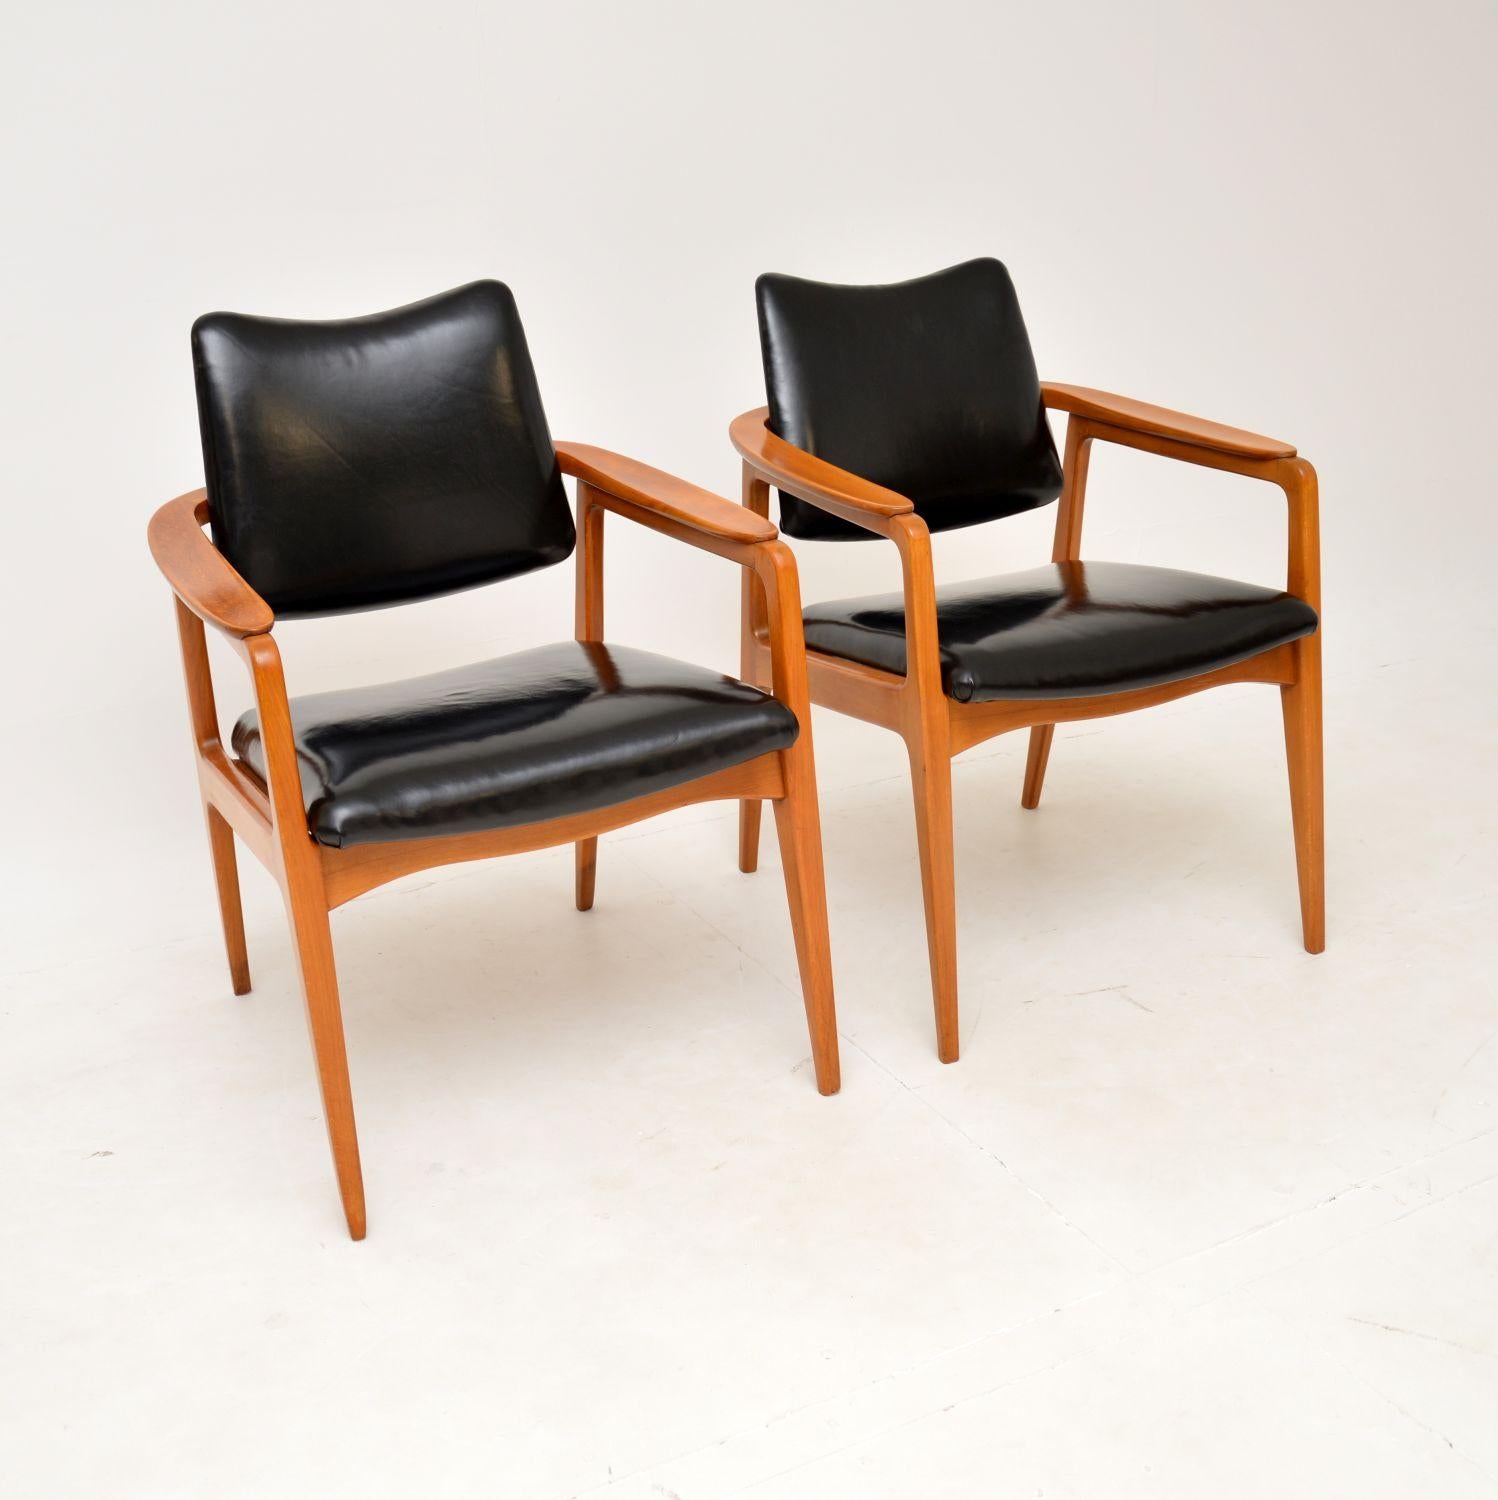 Une paire étonnante et très rare de fauteuils danois vintage en hêtre et cuir. Ils ont été conçus par Sigvard Bernadotte pour France & Daverkosen en 1953. Cette paire date des années 1950.

Ils sont d'une superbe qualité et ont un beau design, ils